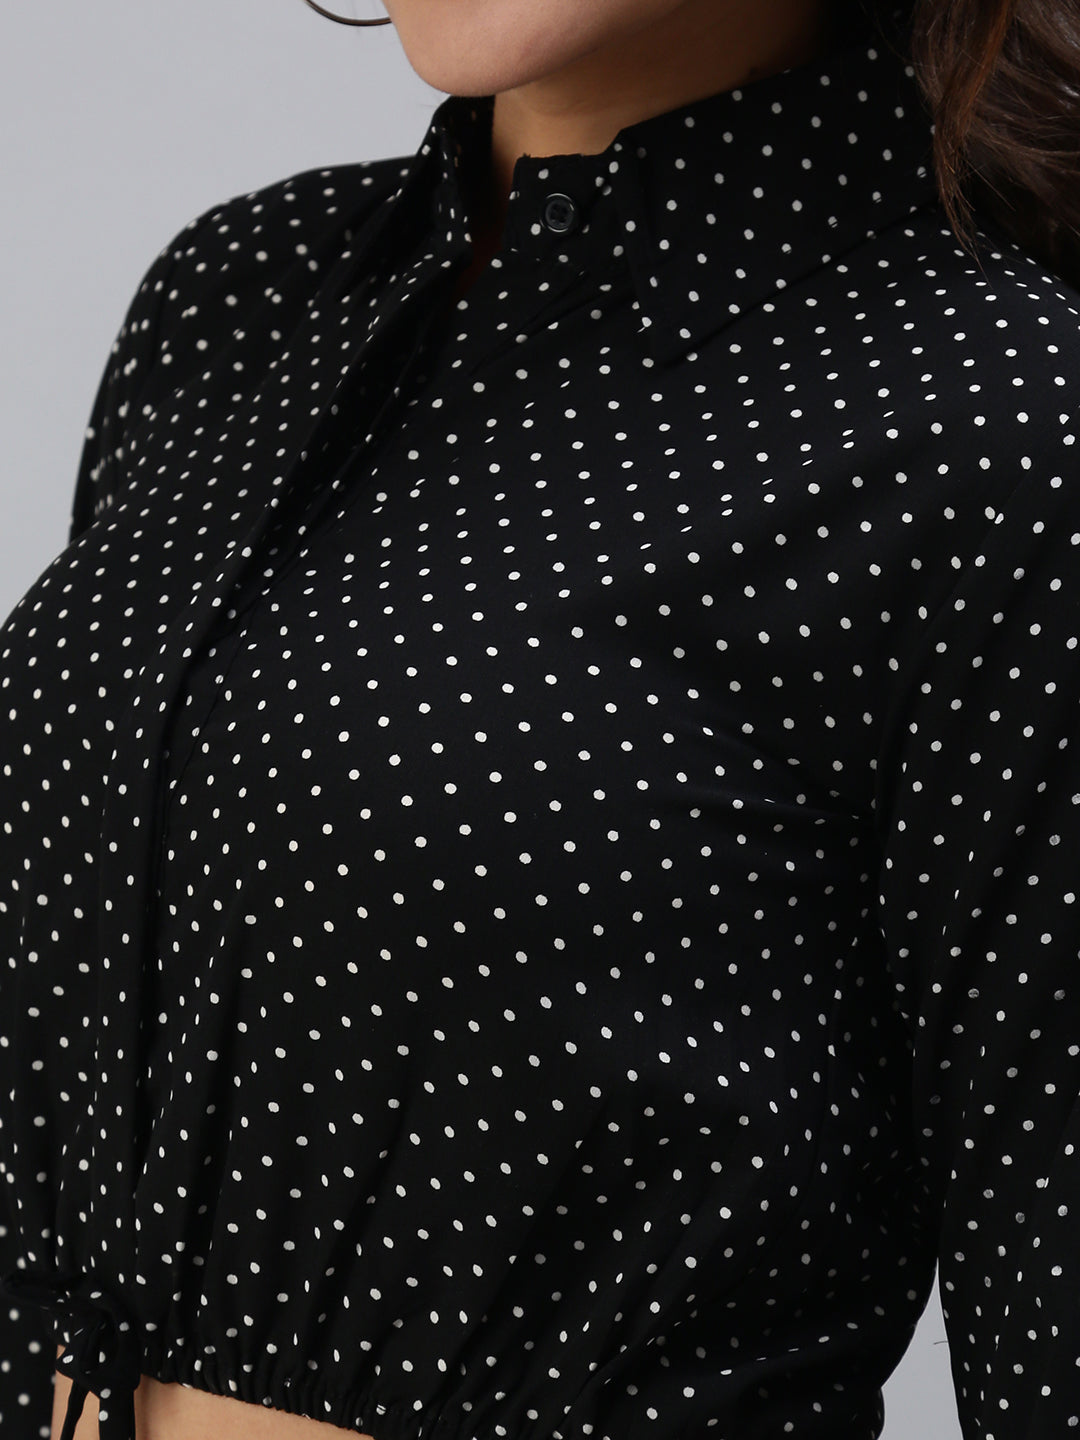 Women's Black Polka Dots Crop Top